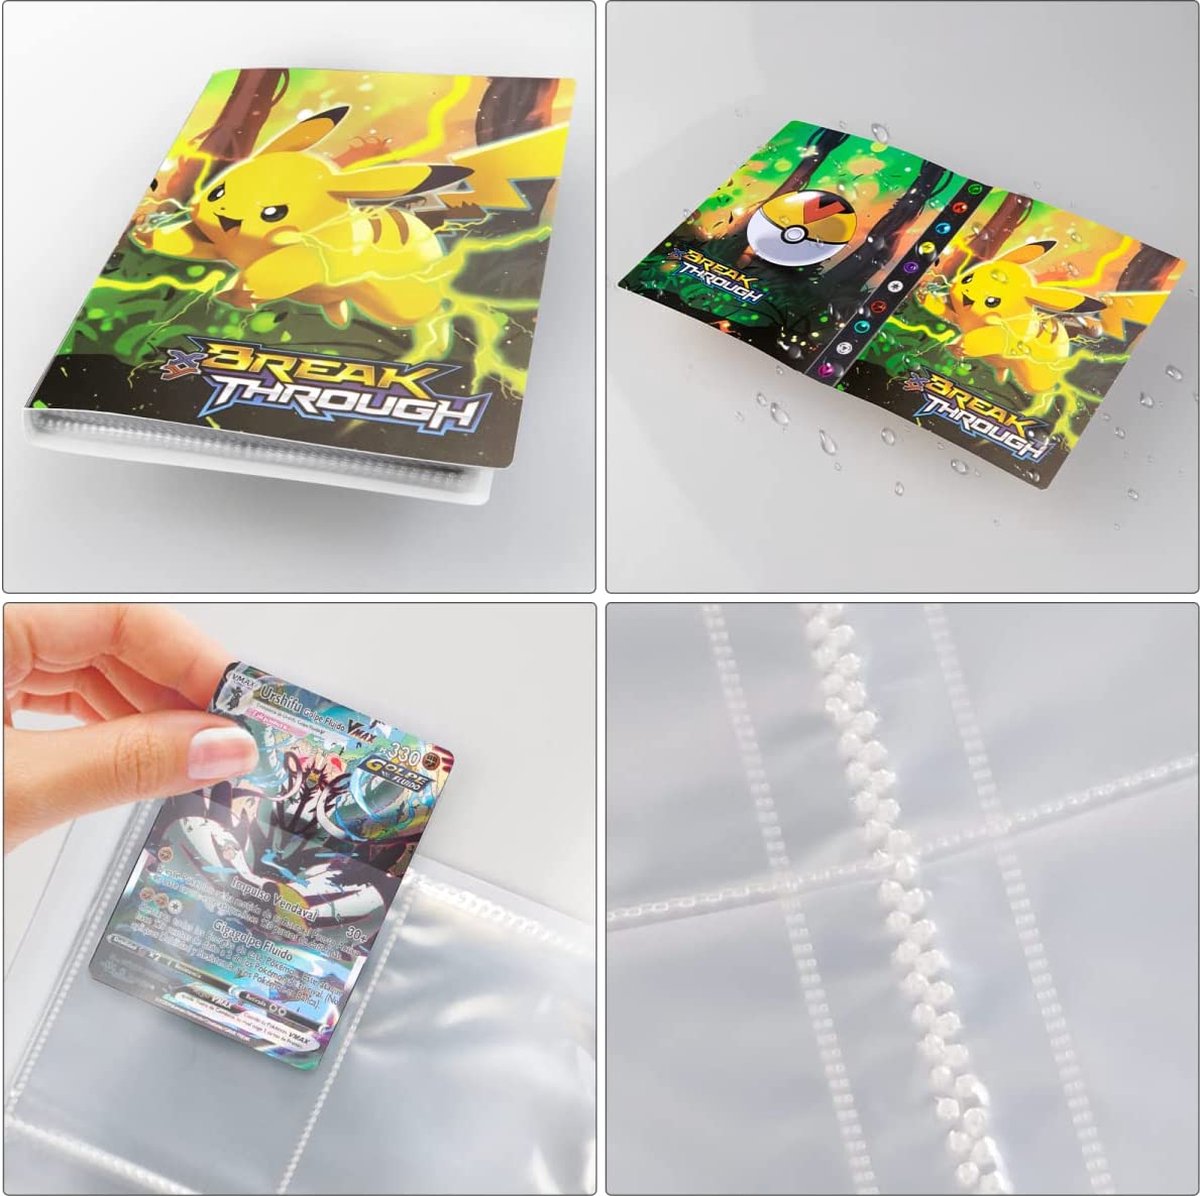 Dossier à collectionner Bangosa® Pokemon pour 400 cartes - Dossier Pokemon  - Classeur